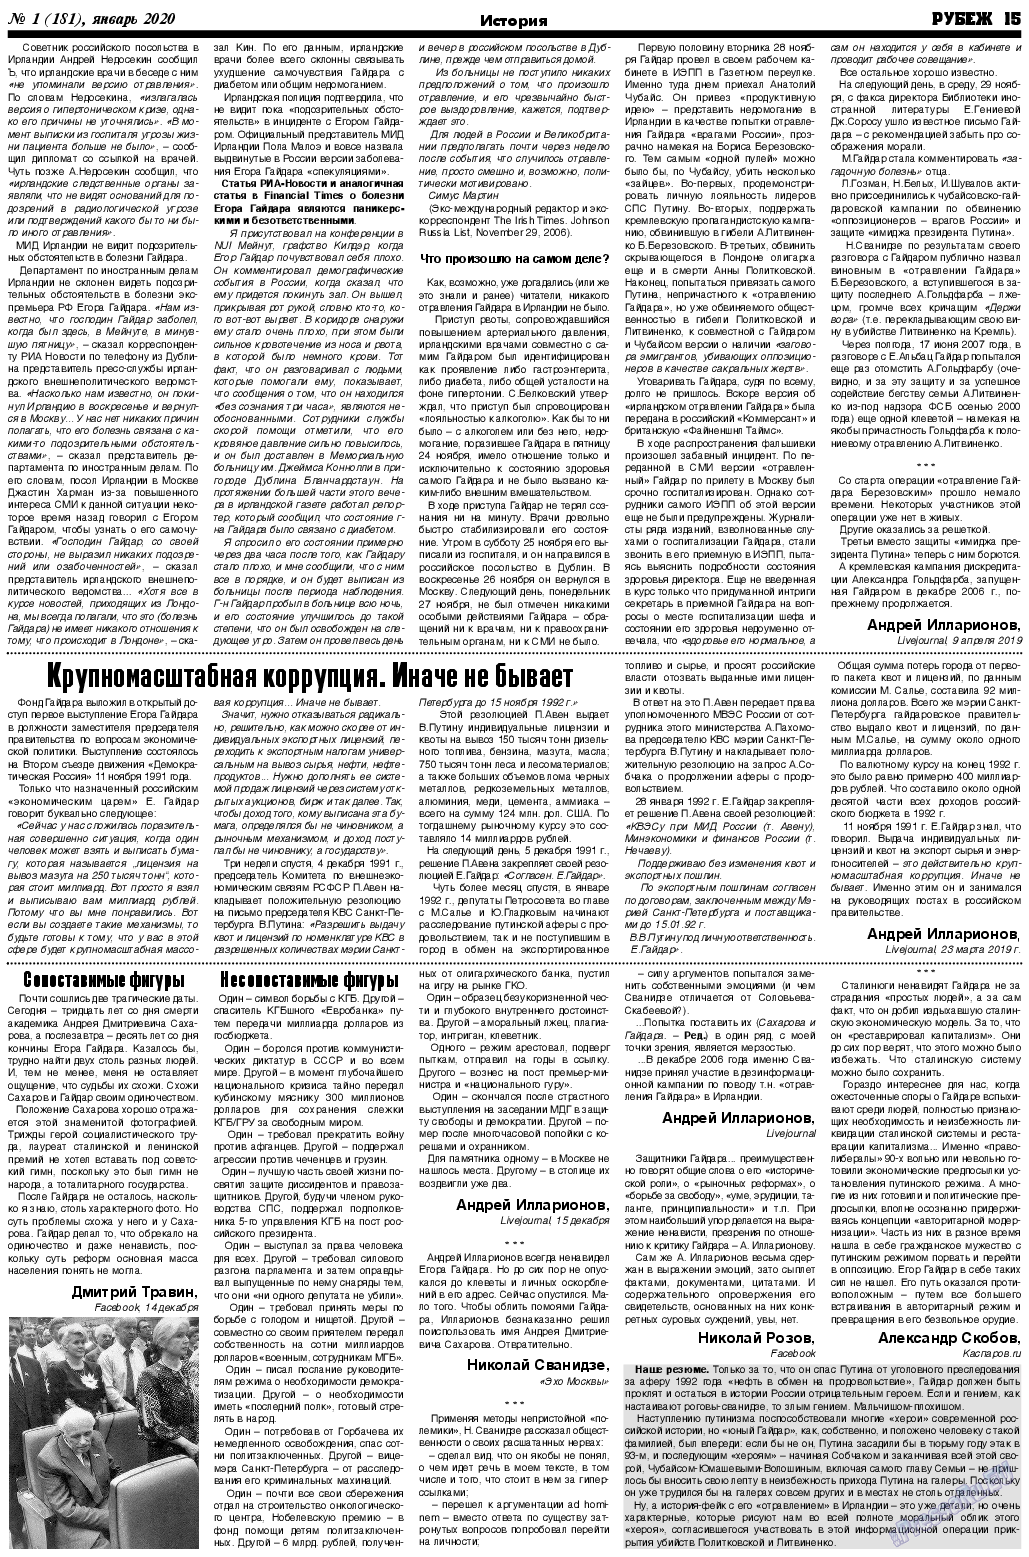 Рубеж (газета). 2020 год, номер 1, стр. 15